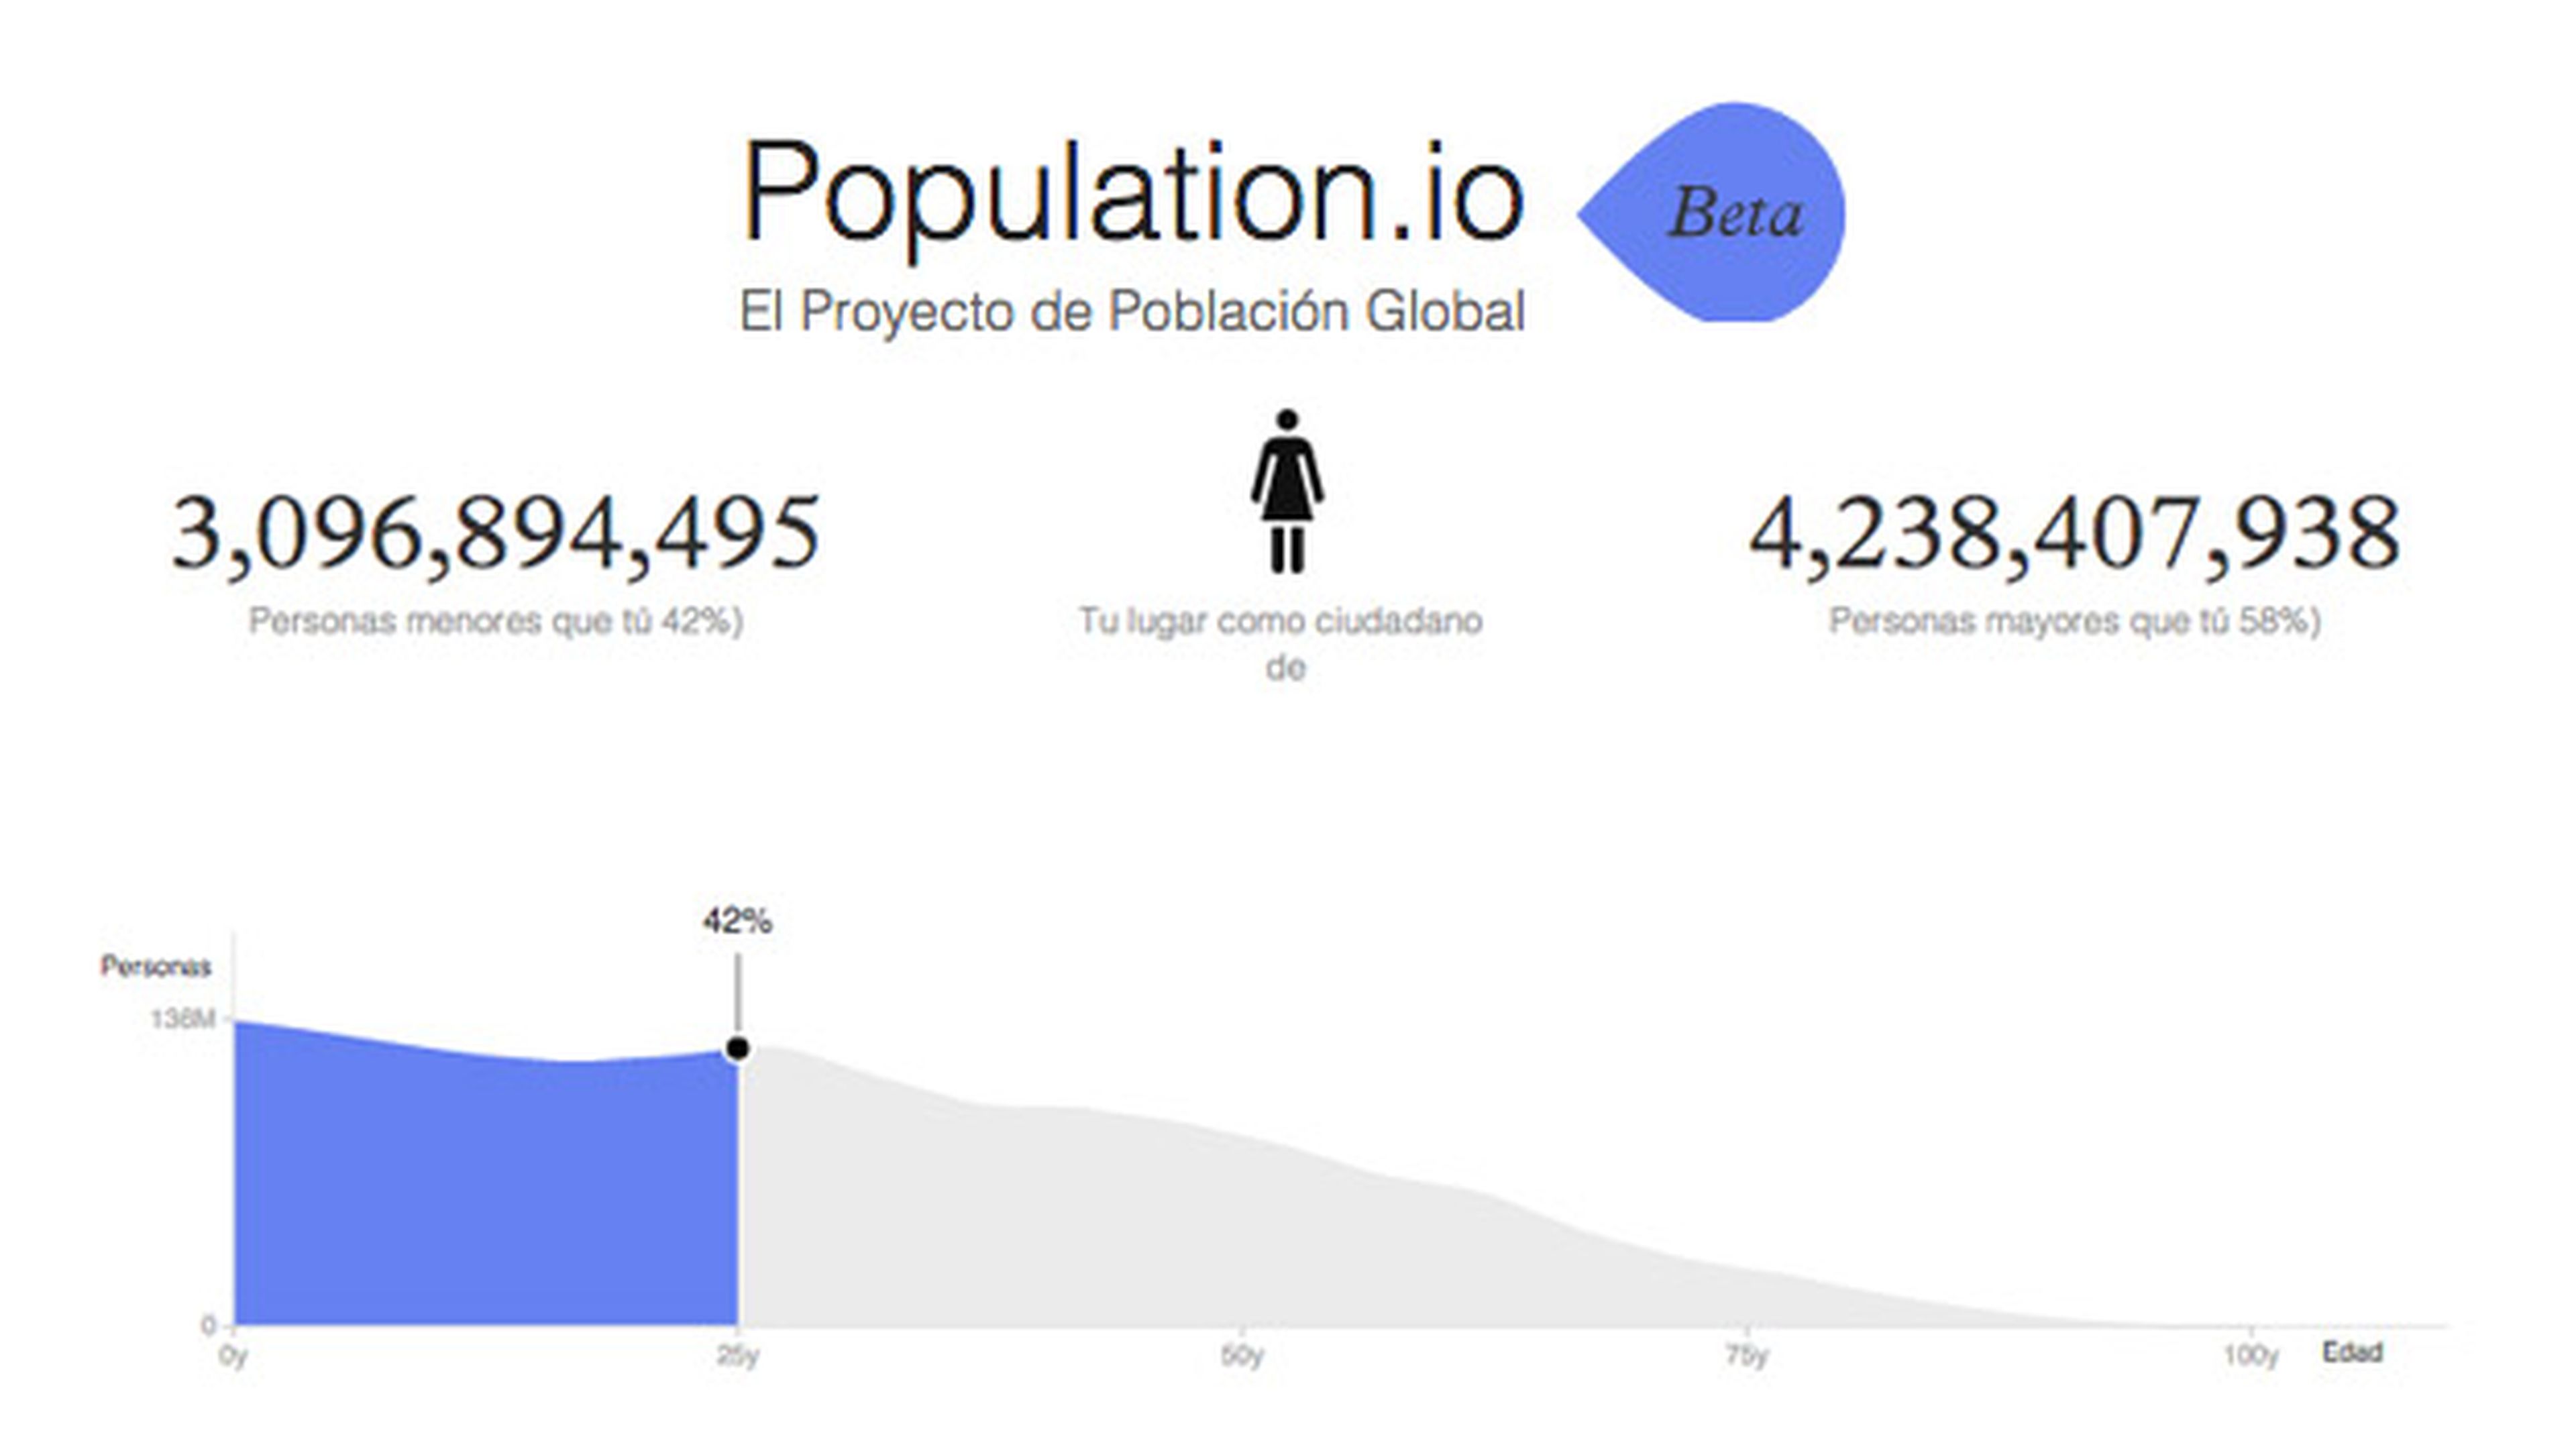 Population.io web interactiva dice lugar en mundo